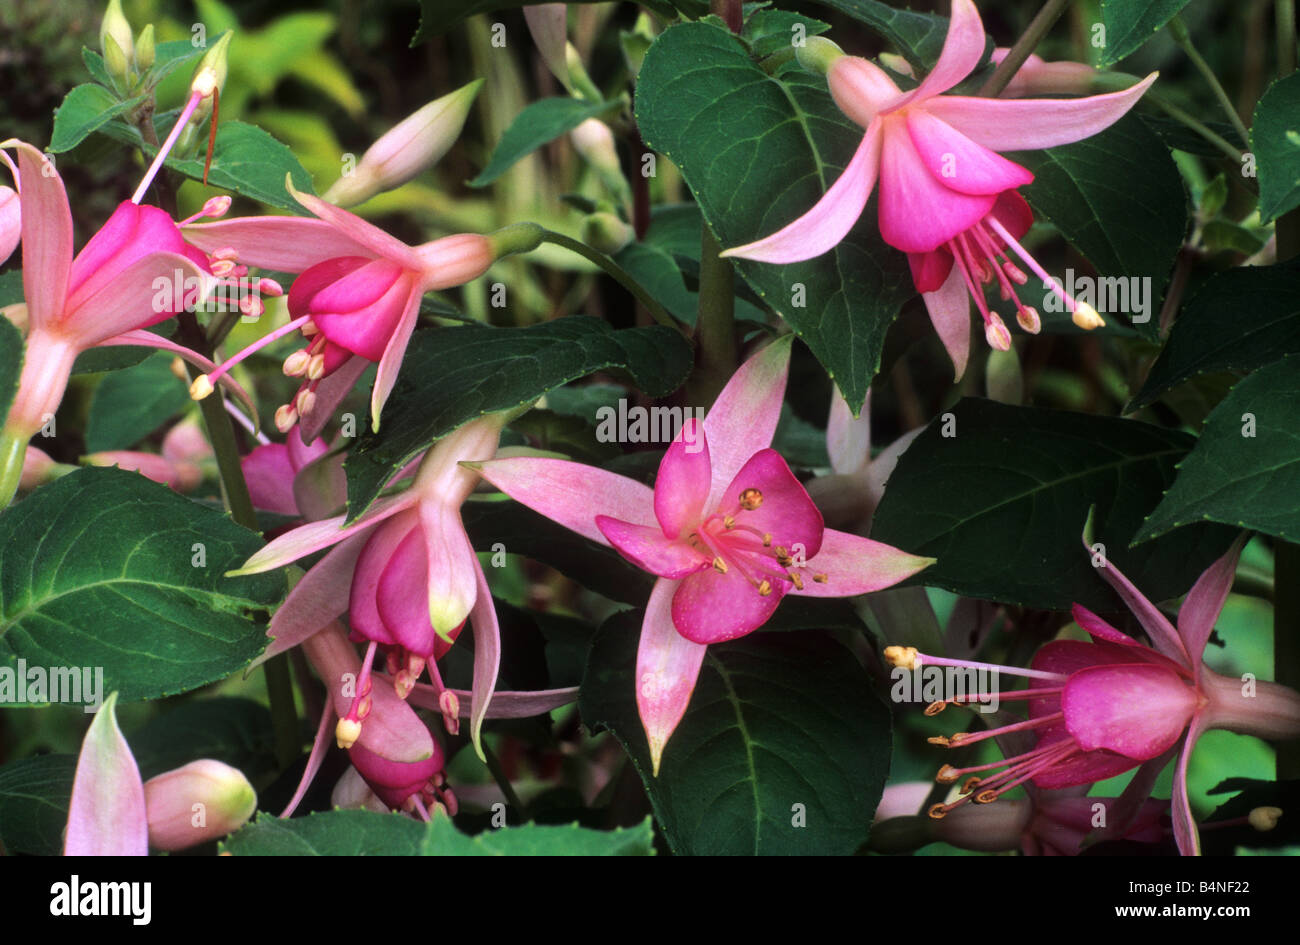 Fuschia 'Walz Jubelteen' pink flower flowers garden plant plants Stock Photo